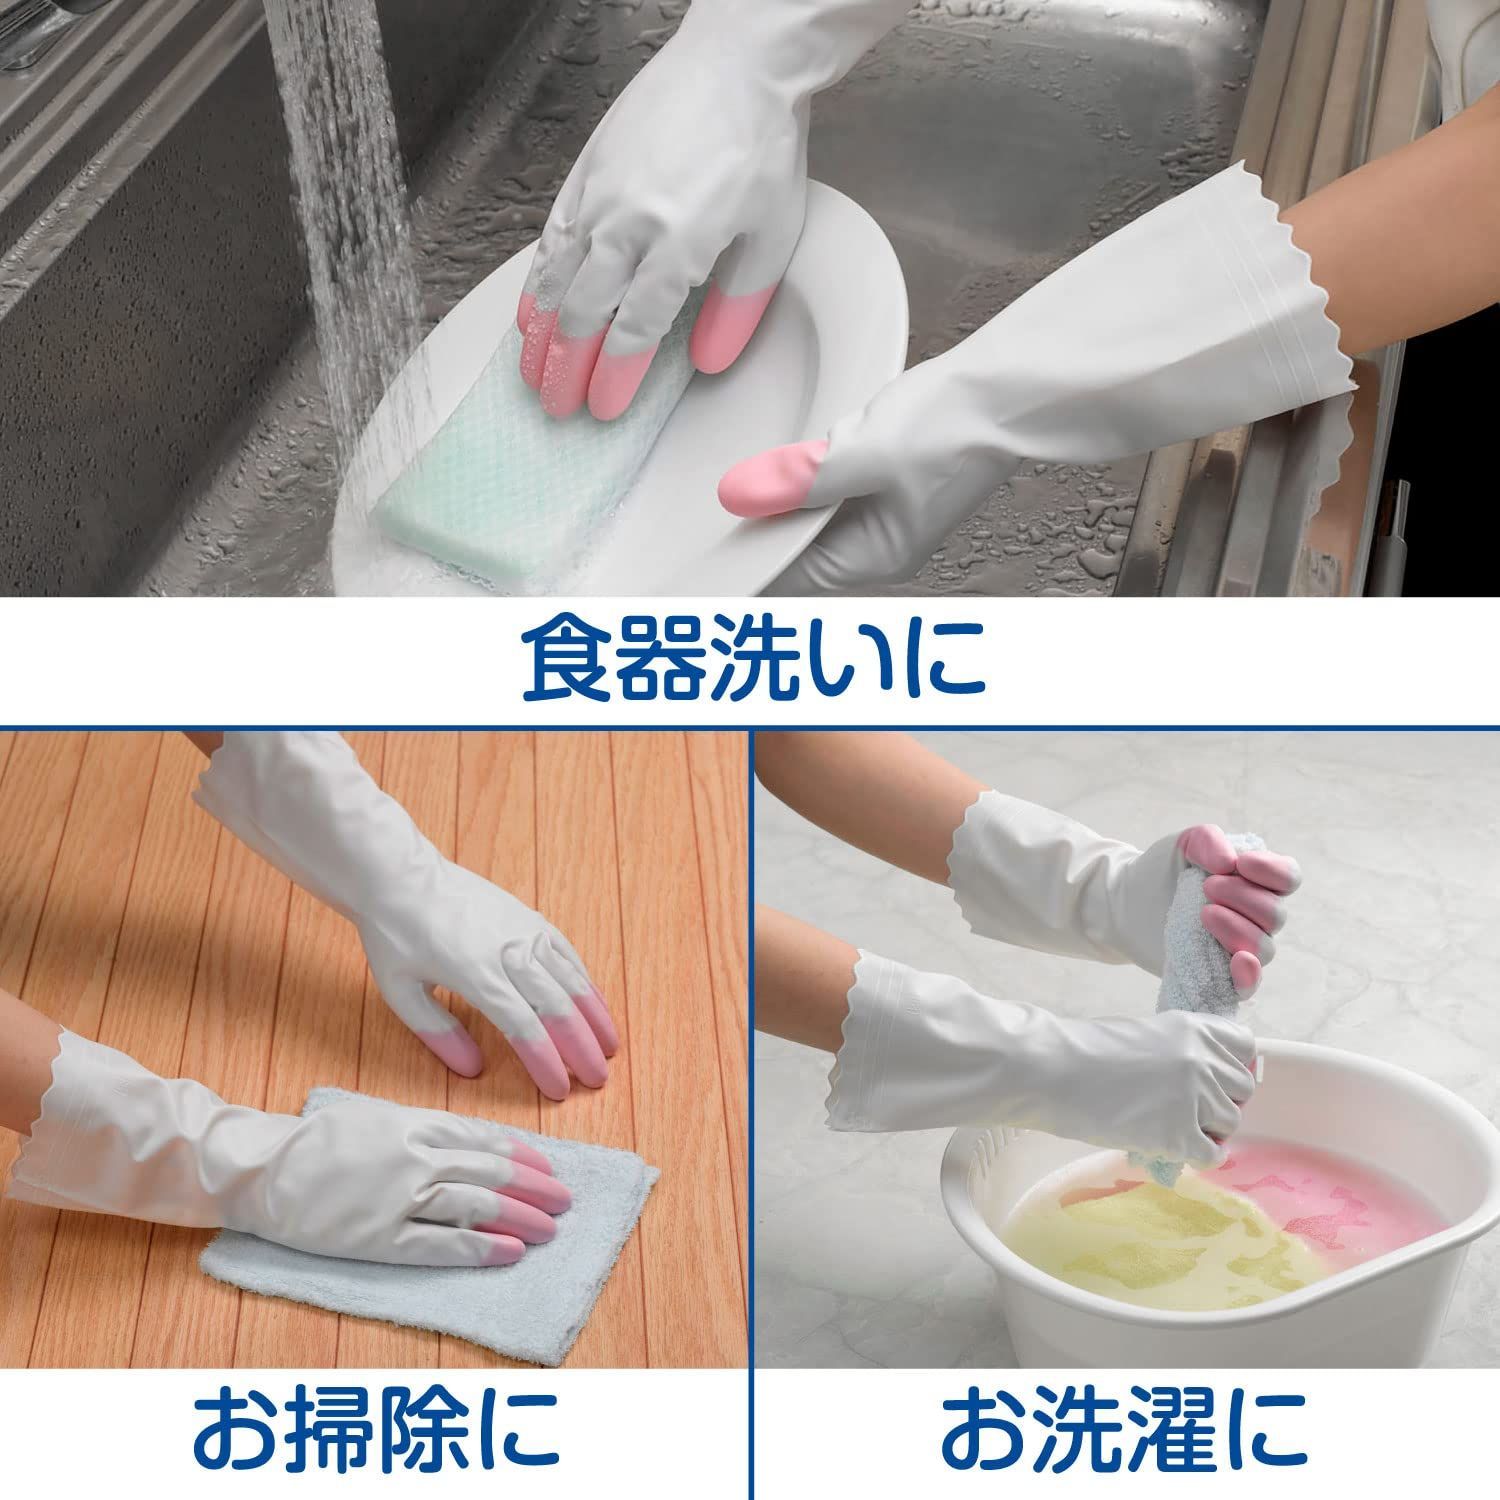 ファッションの 家庭用手袋 ファミリー ビニール 手袋 中厚手 指先強化 Mサイズ ピンク×4個 キッチン 食器洗い 掃除 洗濯 ガーデニング 